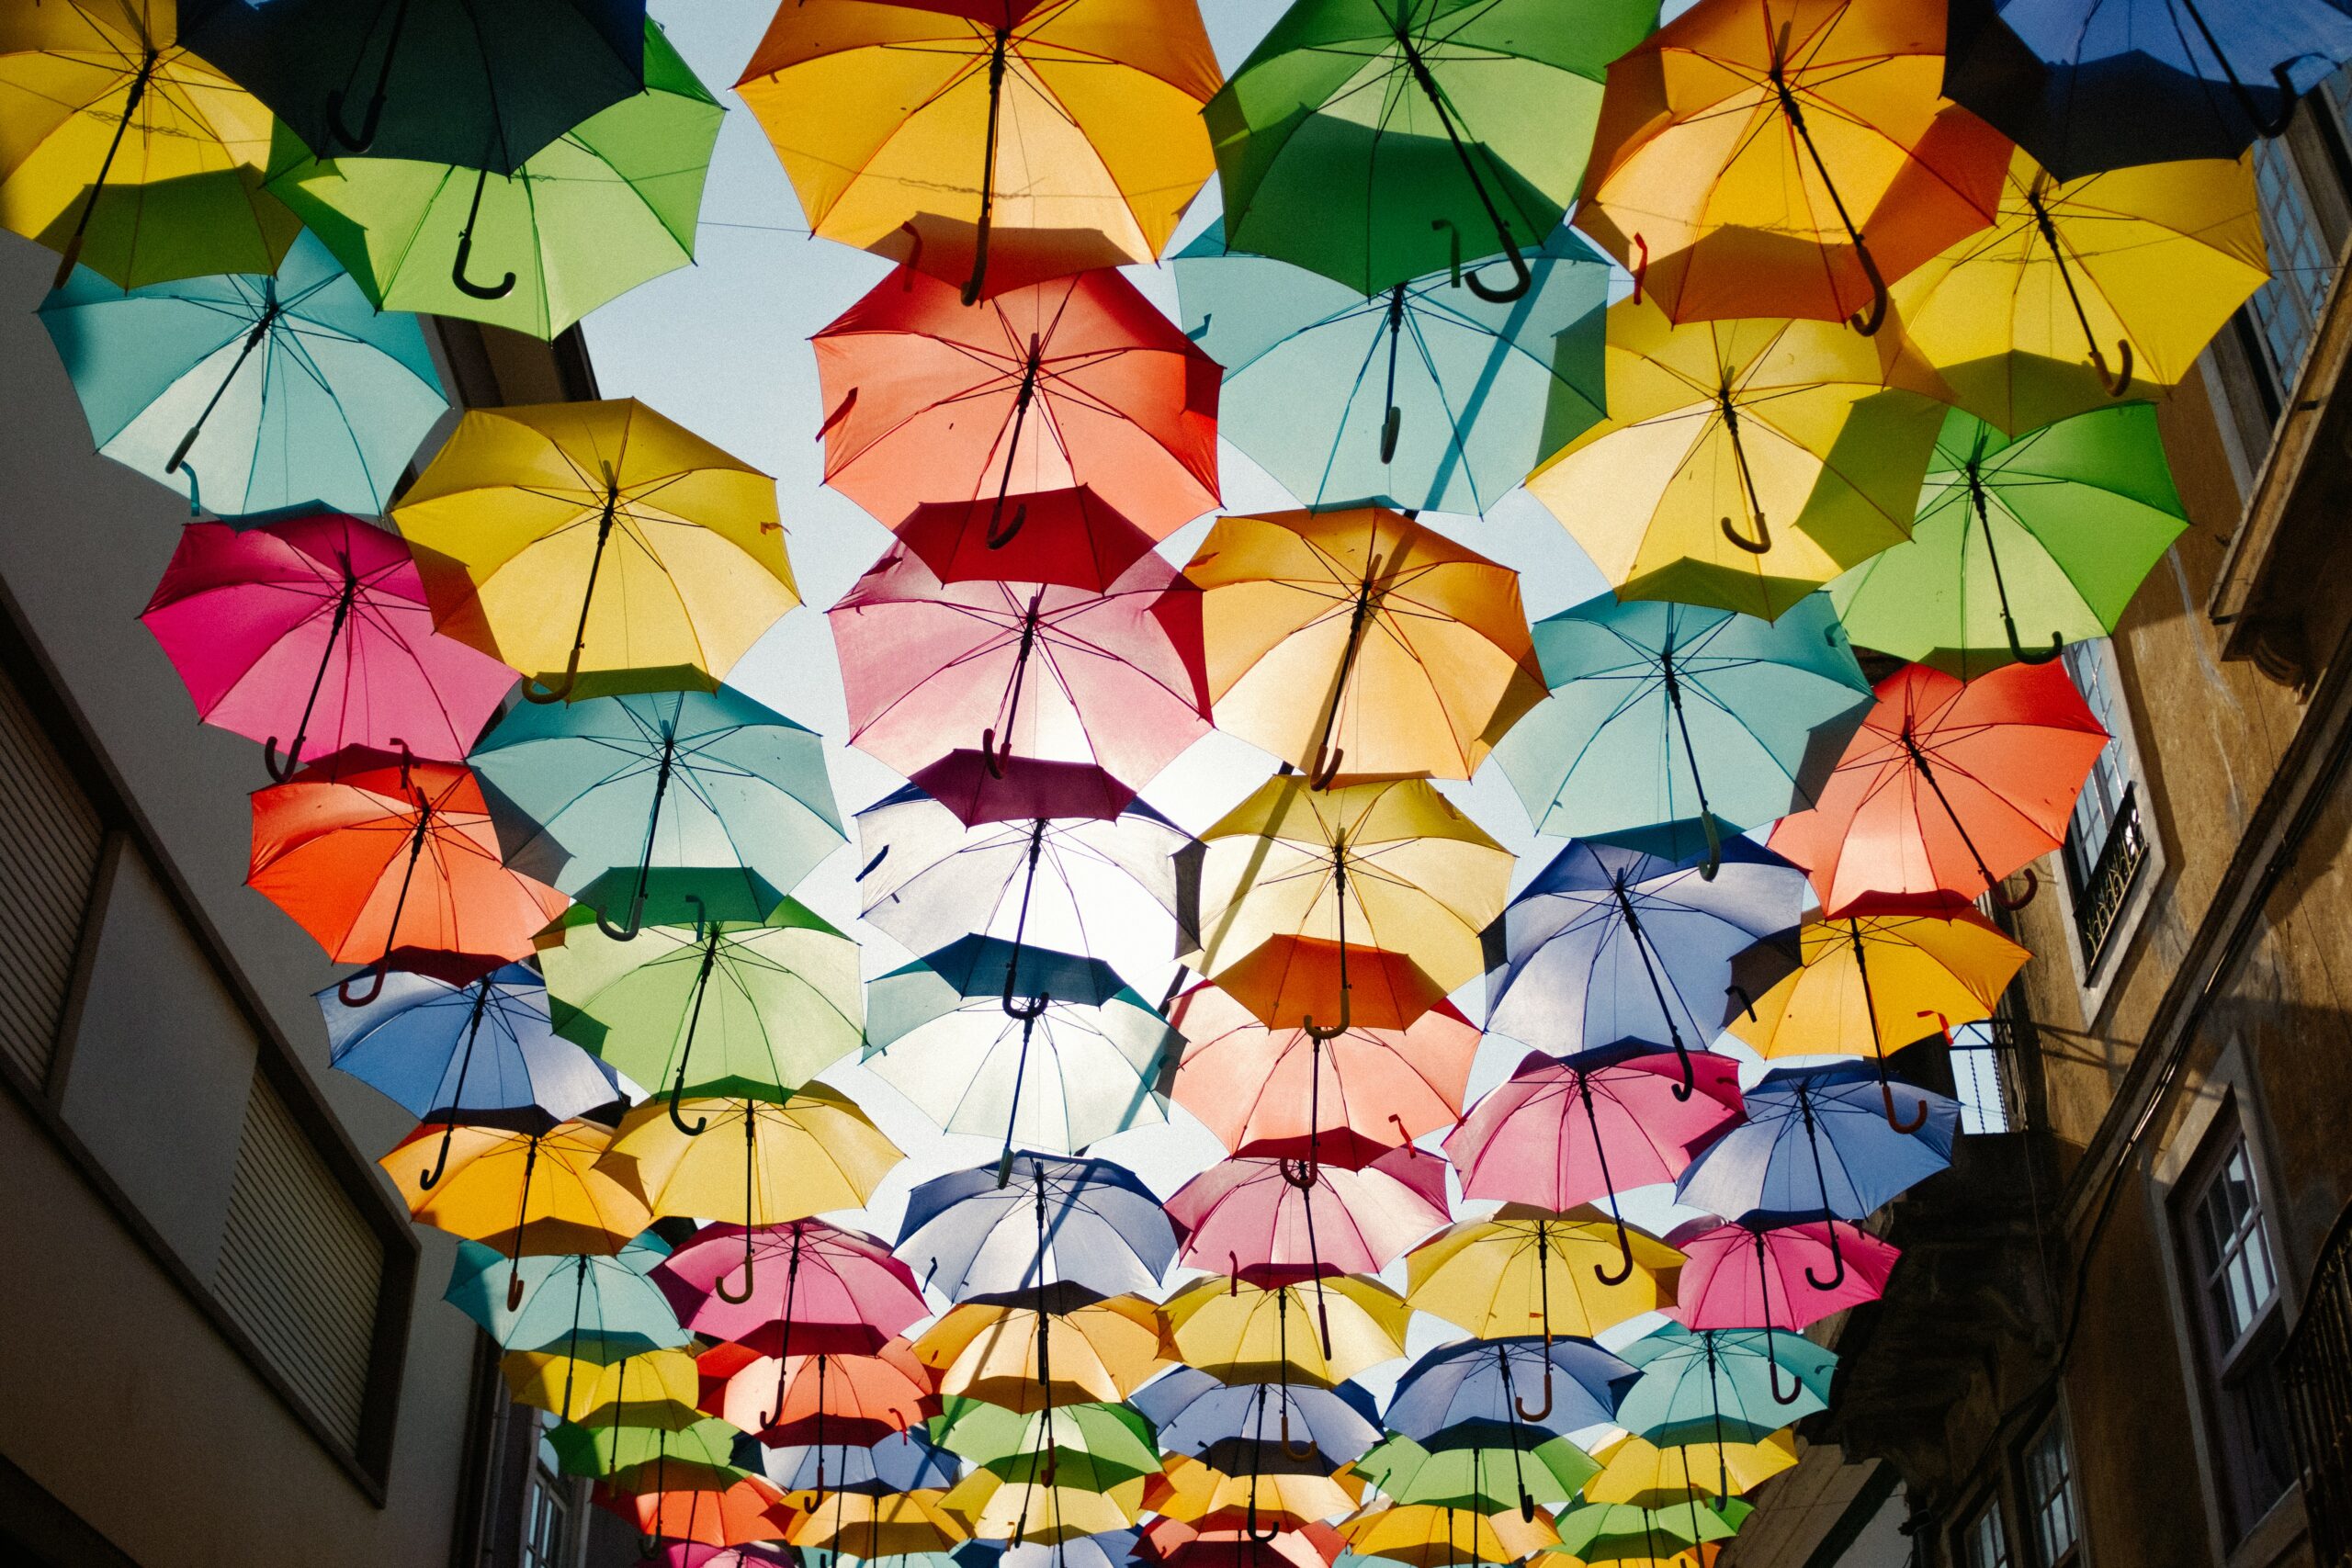 multi-colored umbrellas overhead